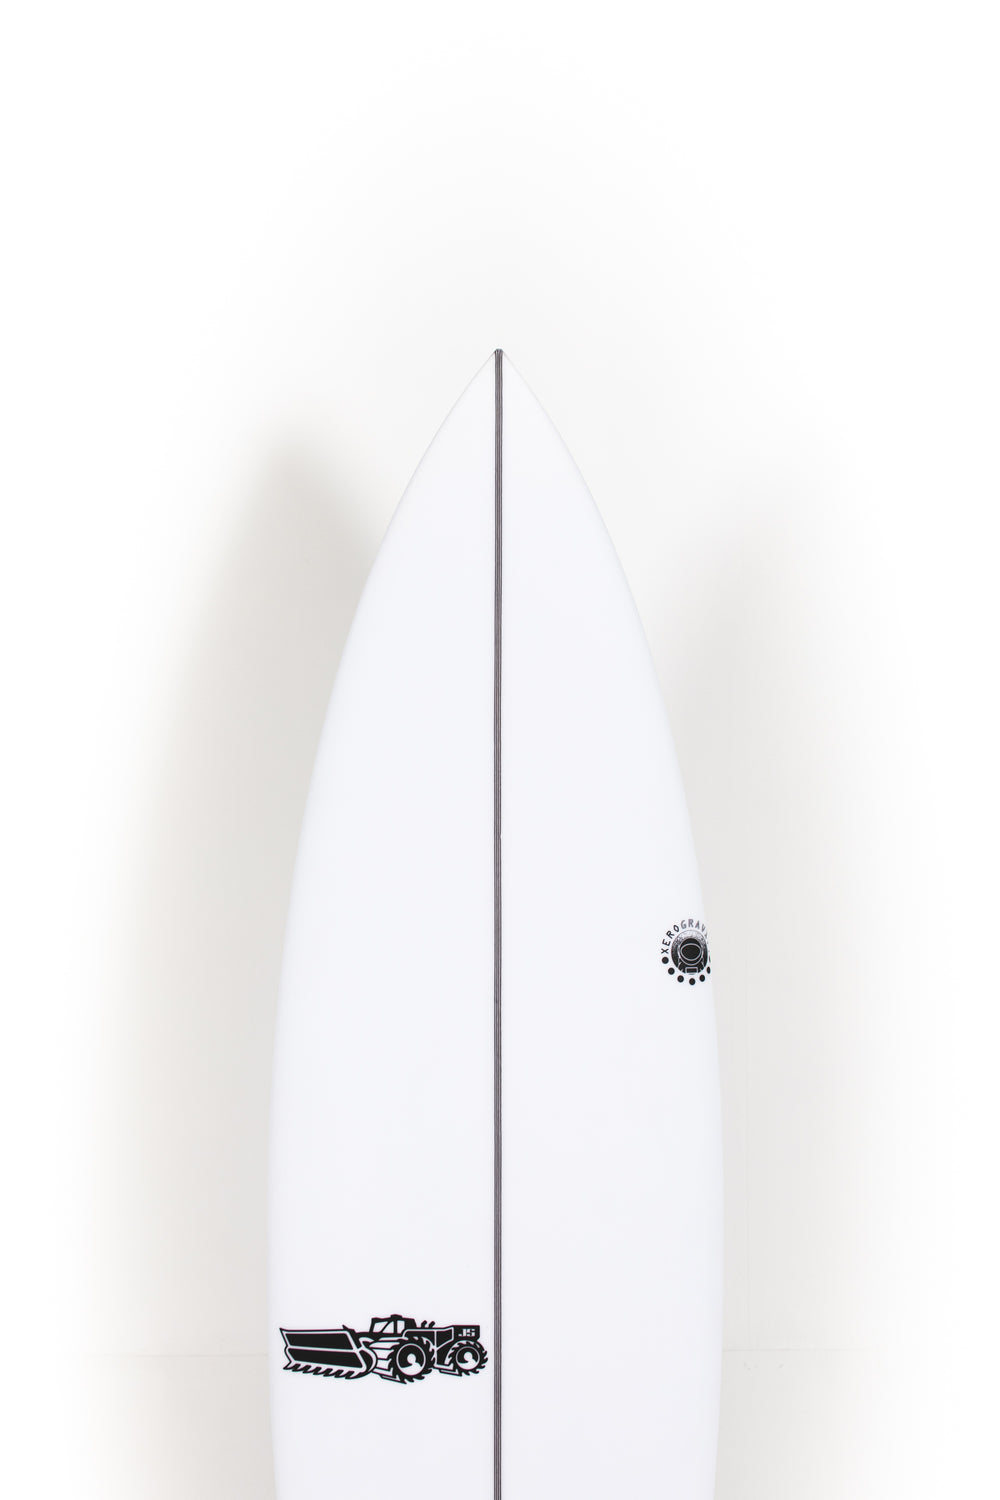 JS Surfboards - XERO GRAVITY - 5'11